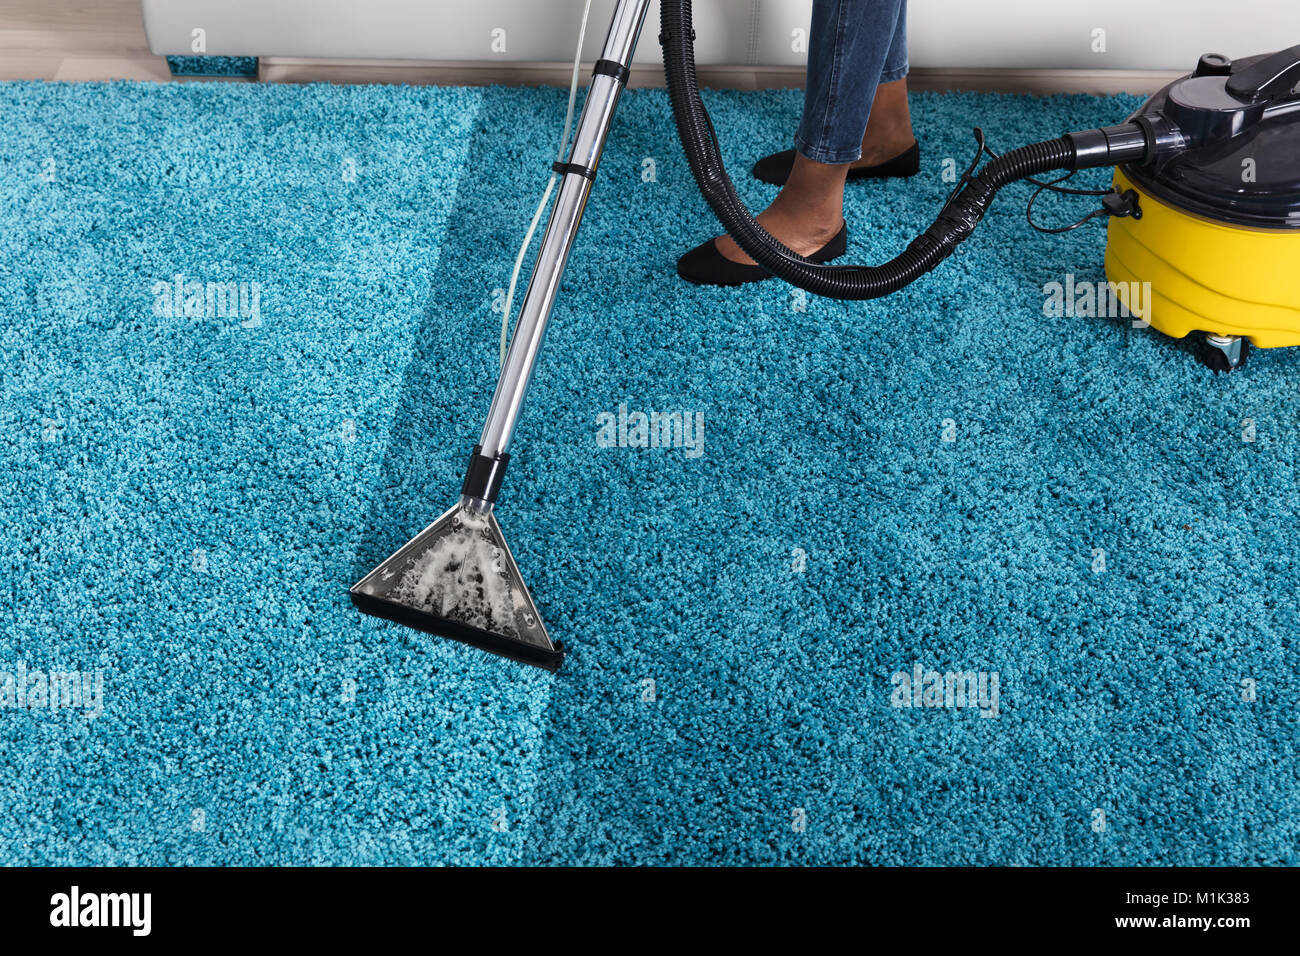 Persona che utilizza un aspirapolvere per la pulizia di tappeti